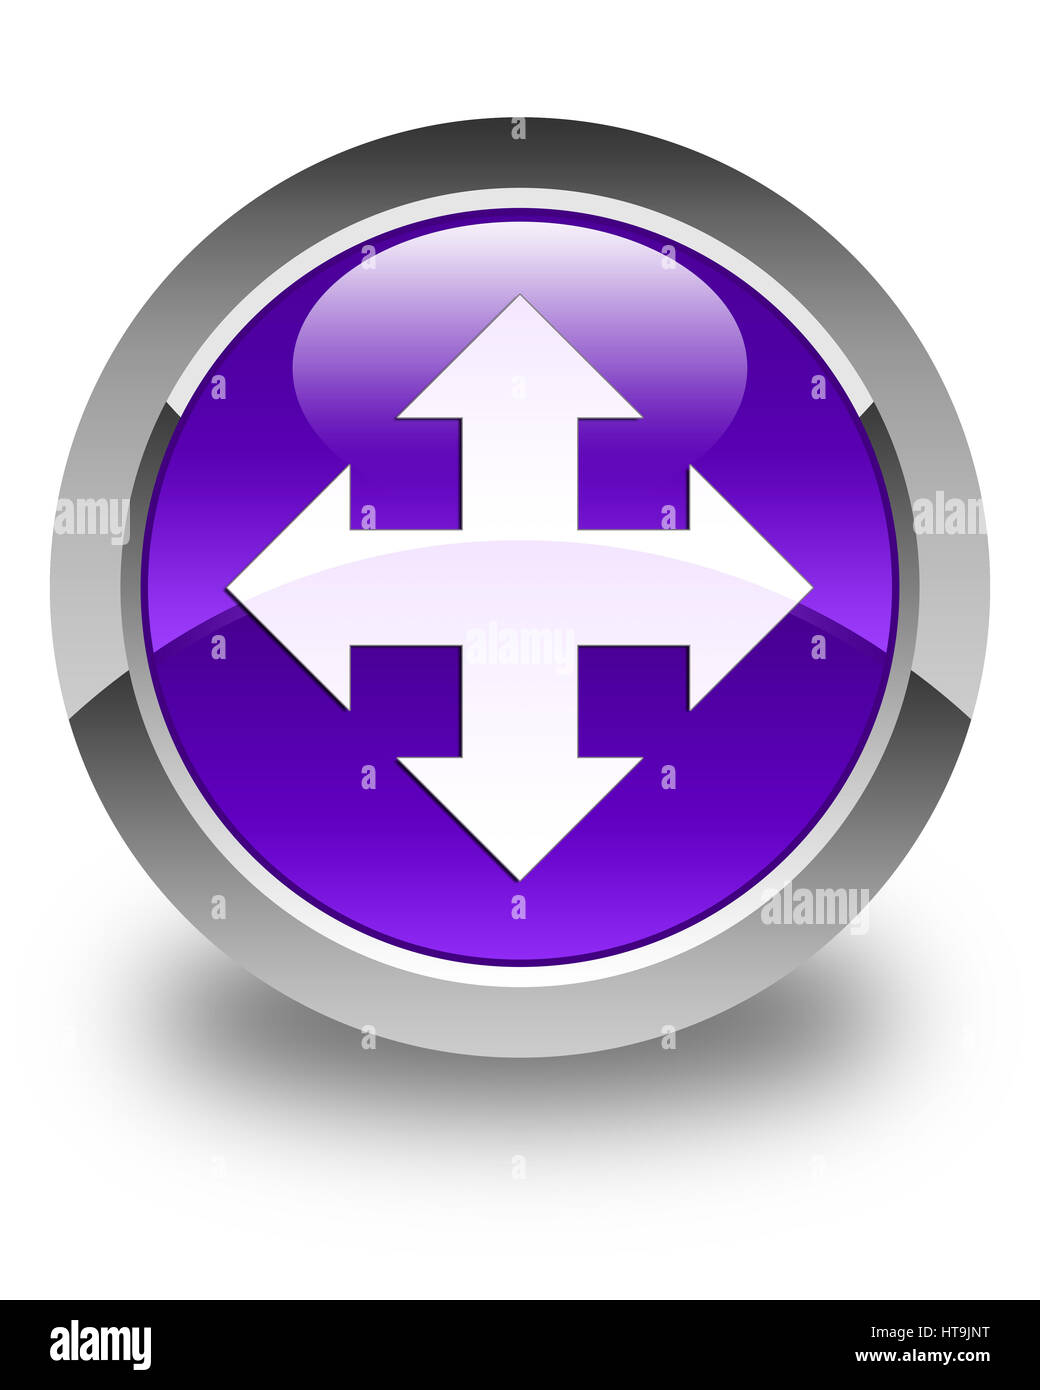 L'icône Déplacer isolé sur bouton rond violet brillant abstract illustration Banque D'Images